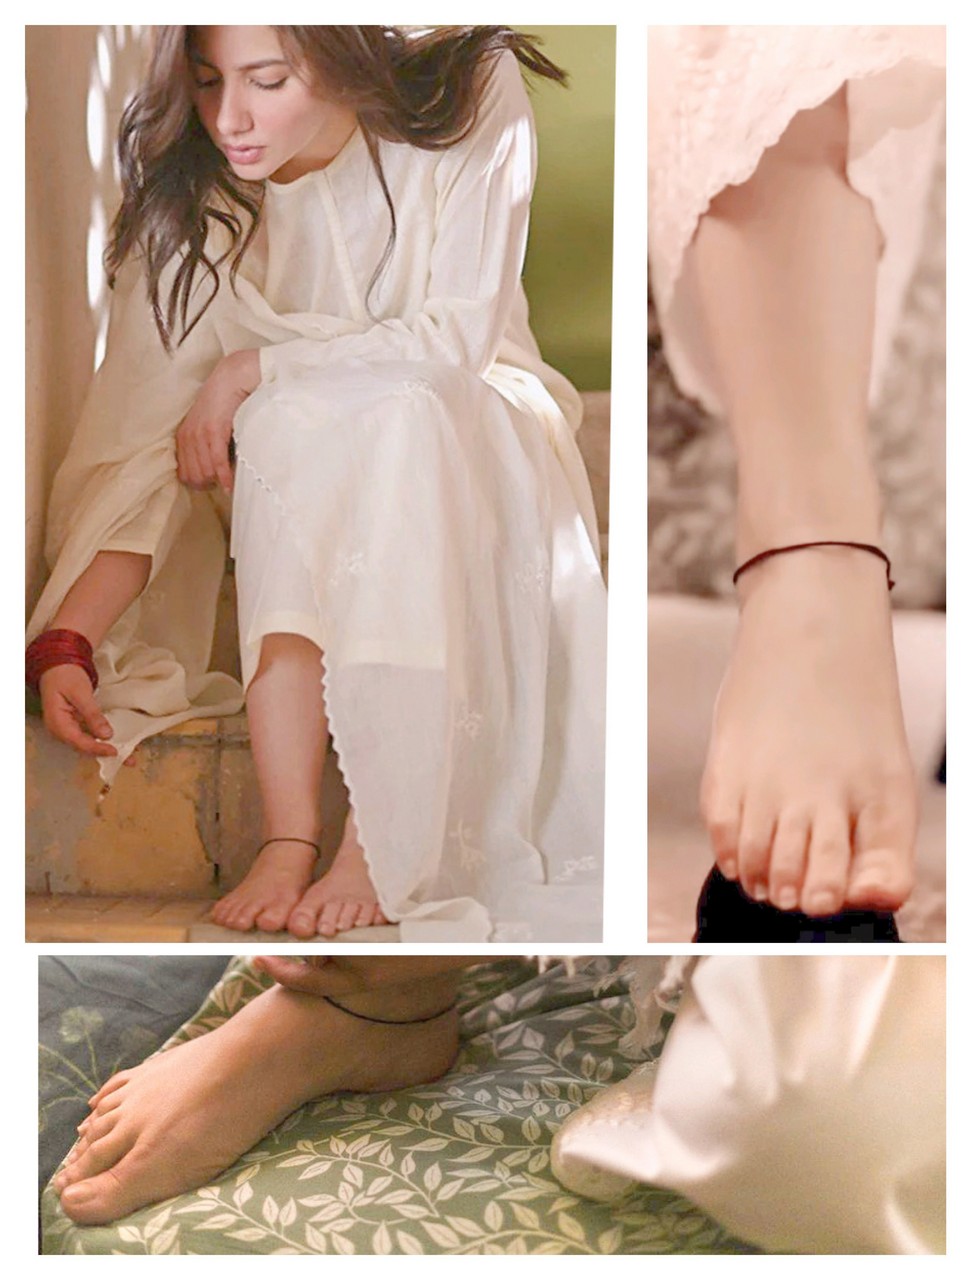 Mahira Khan Feet